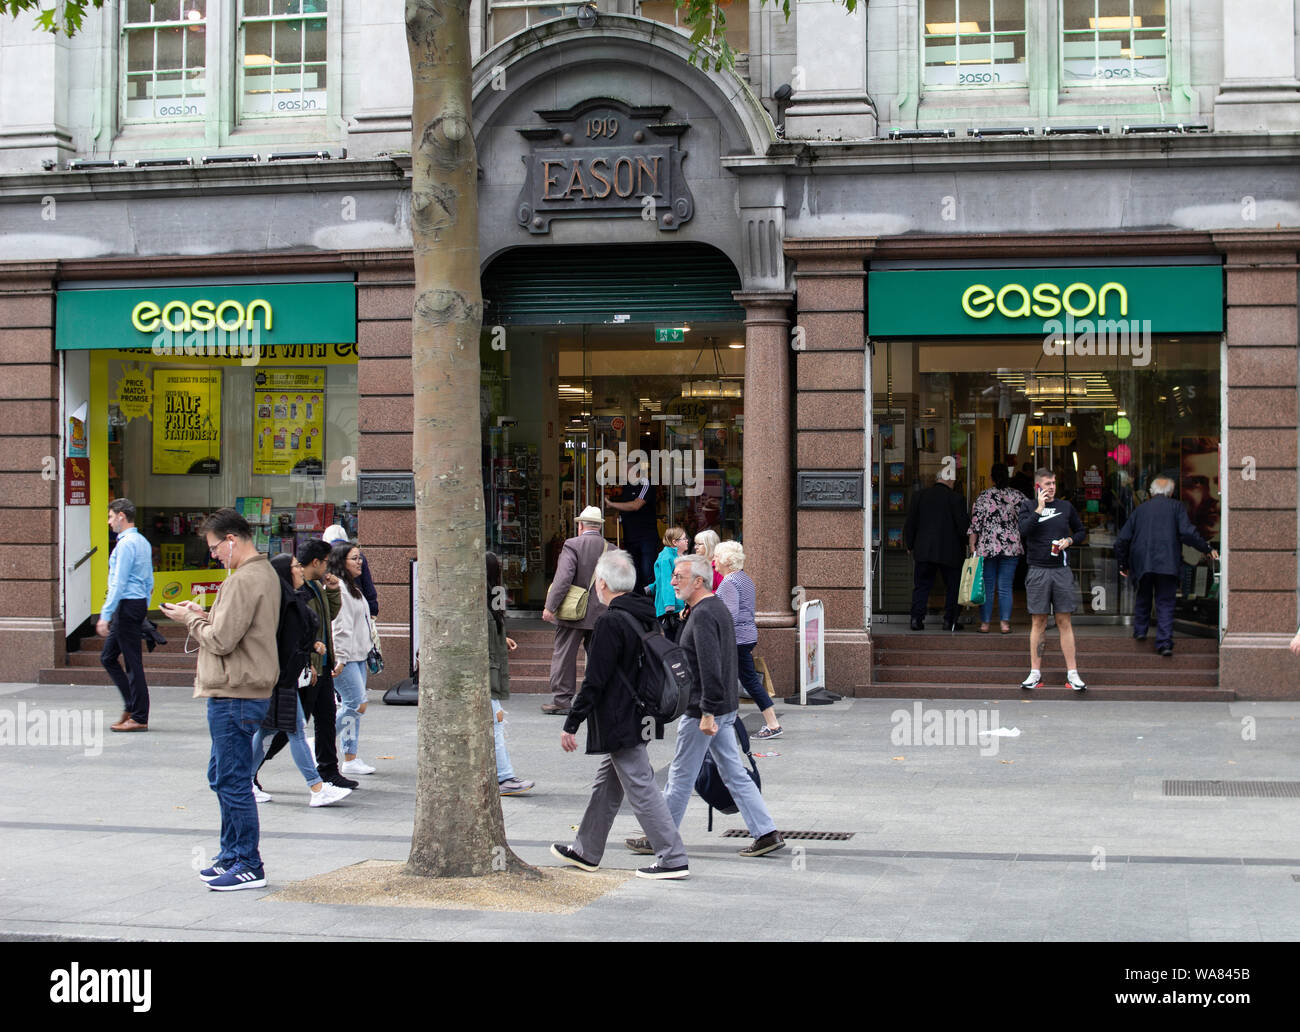 Il negozio principale della Eason catena di vendita al dettaglio in O'Connell Street, Dublin.Ireland, è uno dei più grandi fornitori di libri,quotidiani in Irlanda. Foto Stock